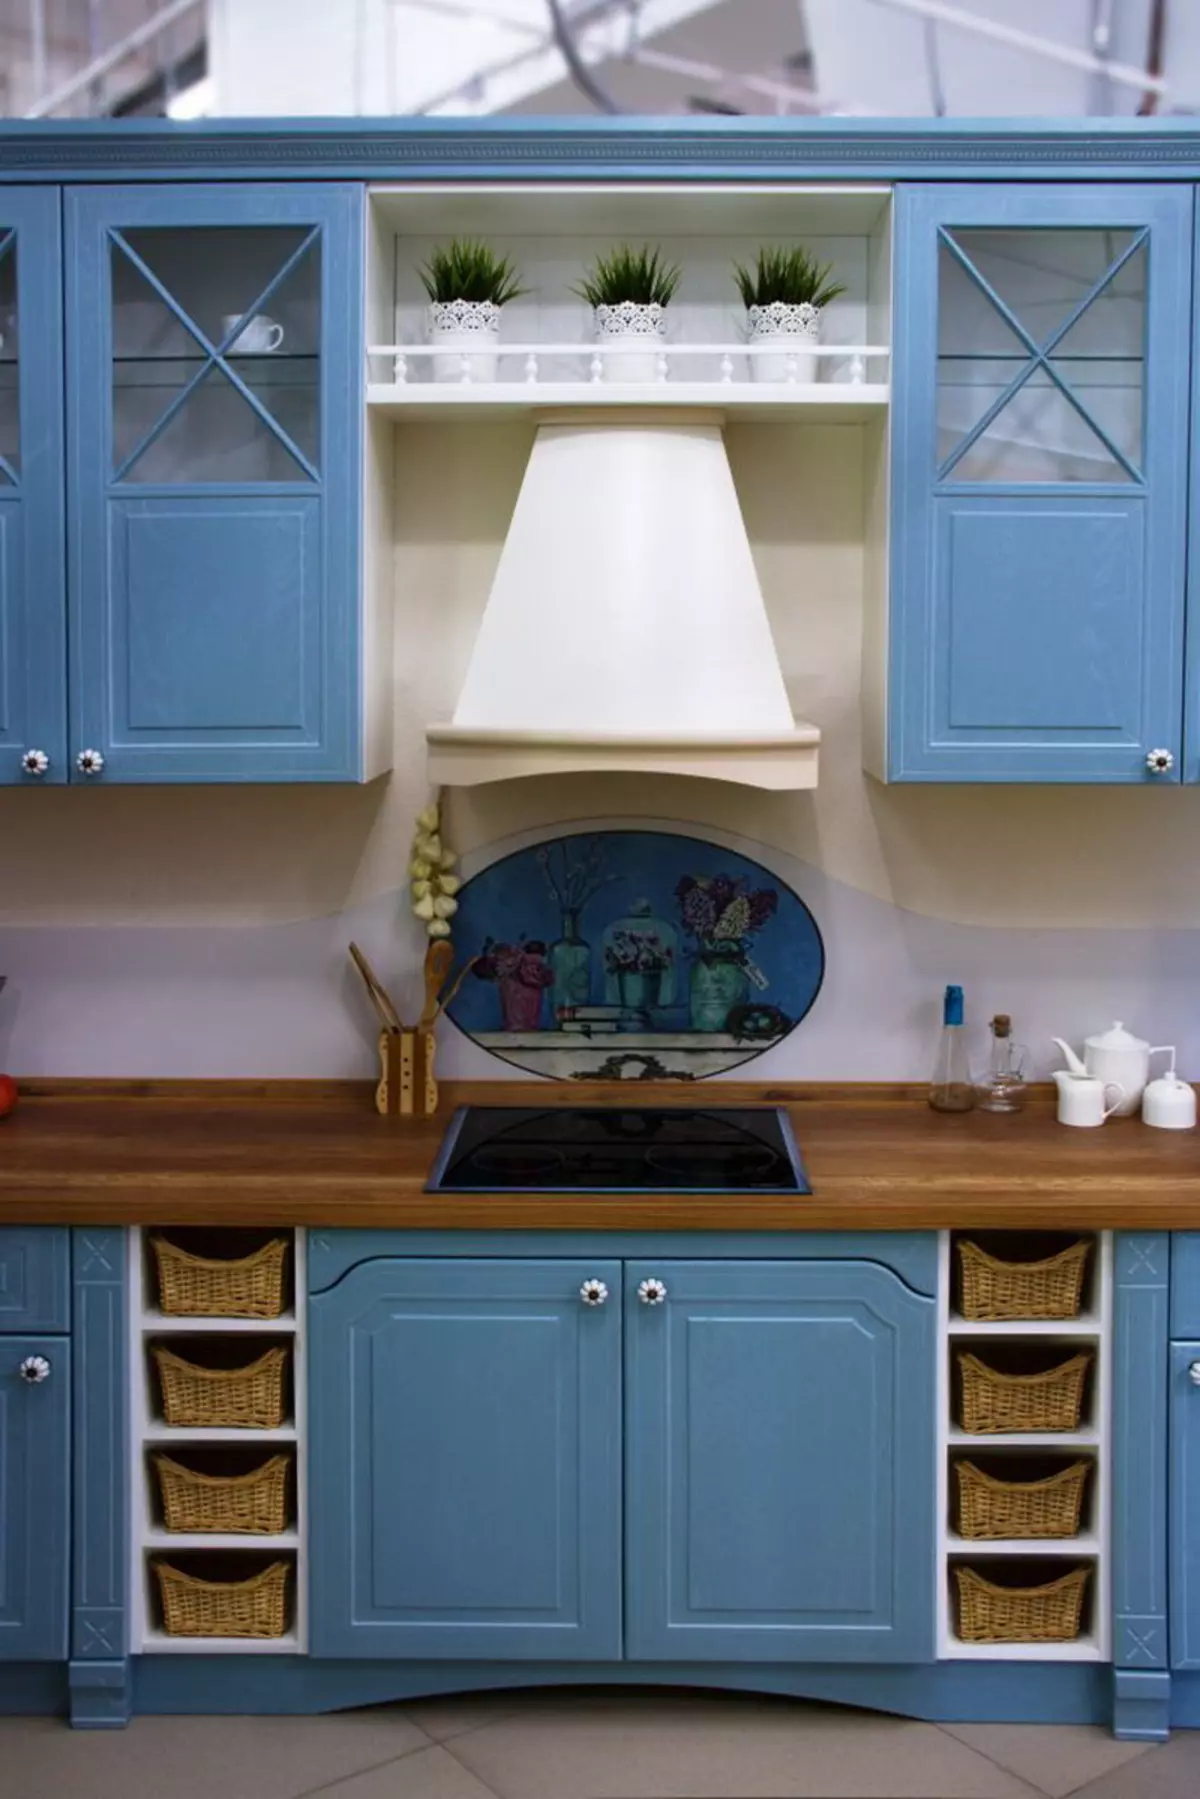 Bucătărie albastră (82 fotografii): Ce culori sunt combinate în interiorul unui set de bucătărie albastră? Design de bucătărie în tonuri albastre ușoare și întunecate 9555_63